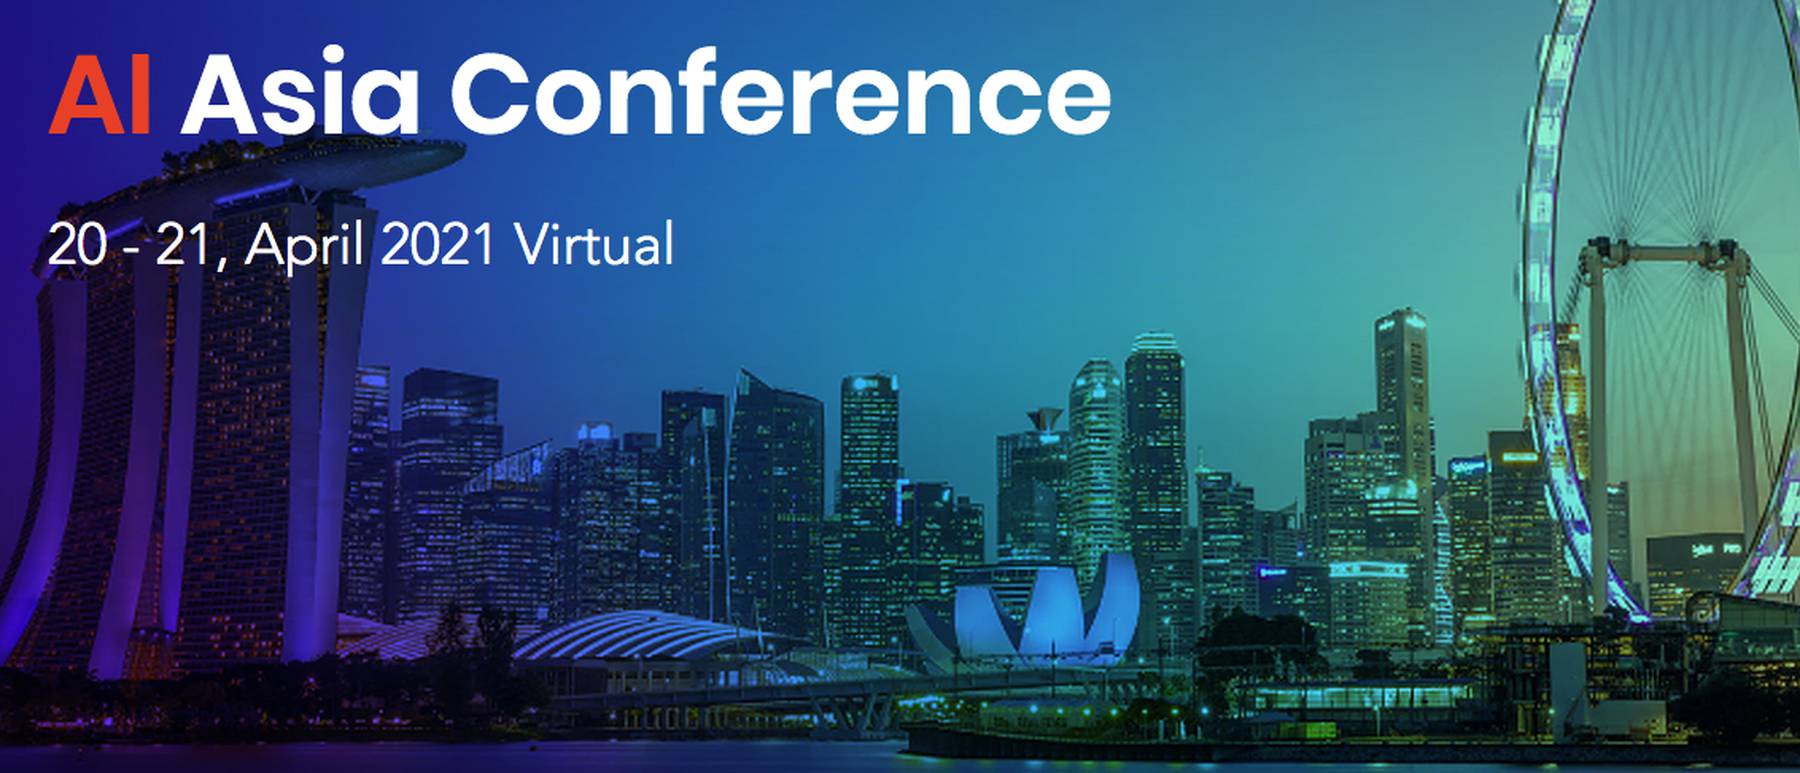 AI Asia Conference 2021 AI & ML Events